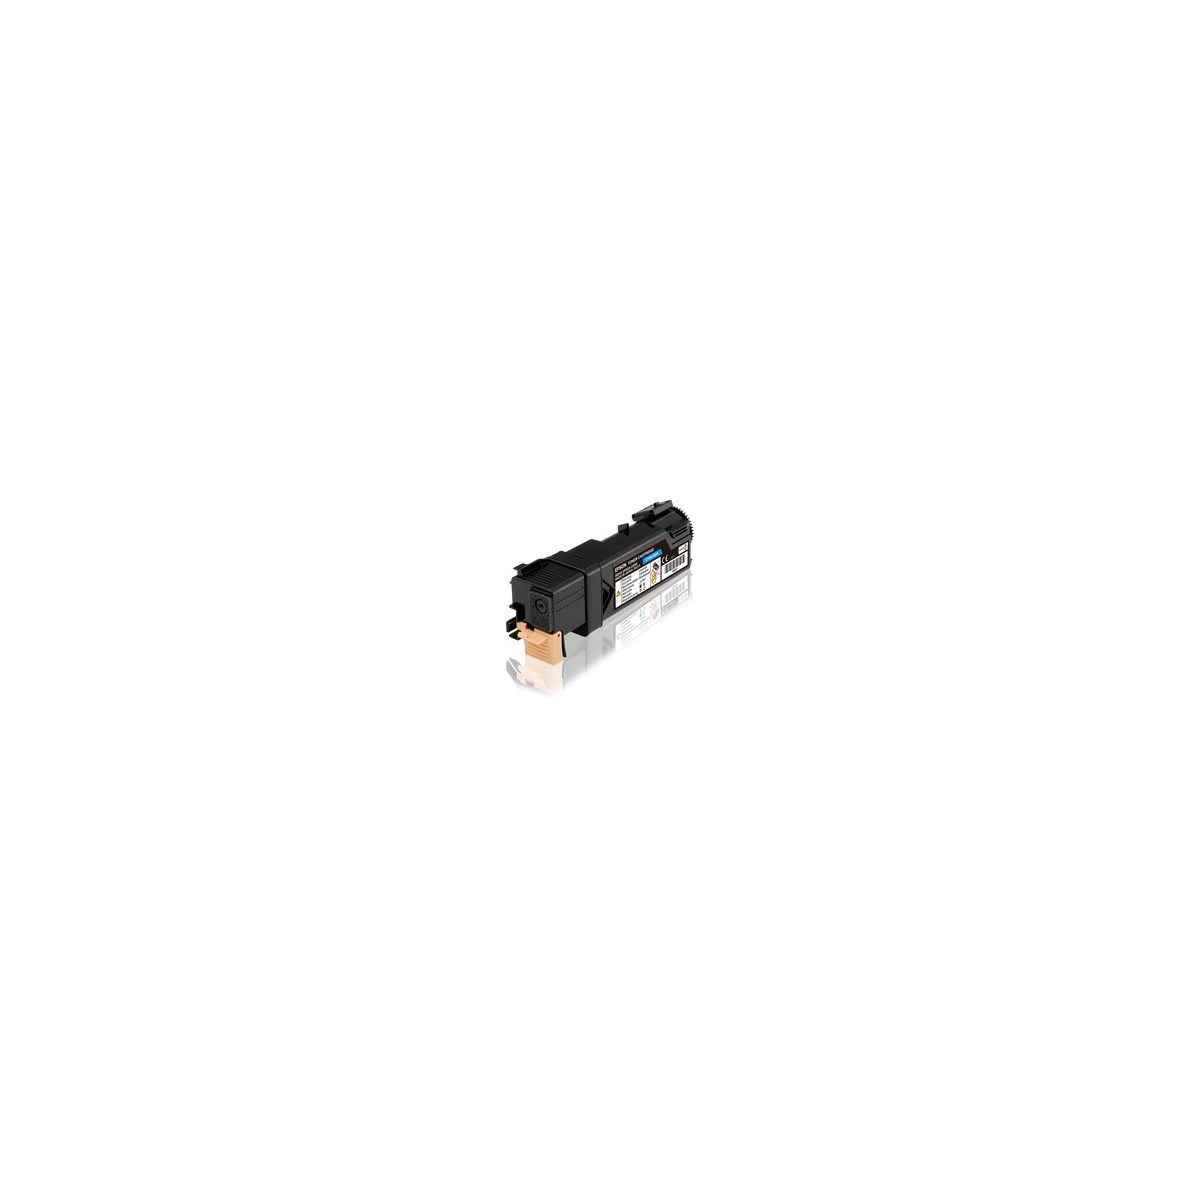 Epson Toner Cartridge Cyan2.5k - 2500 pages - Cyan - 1 pc(s)